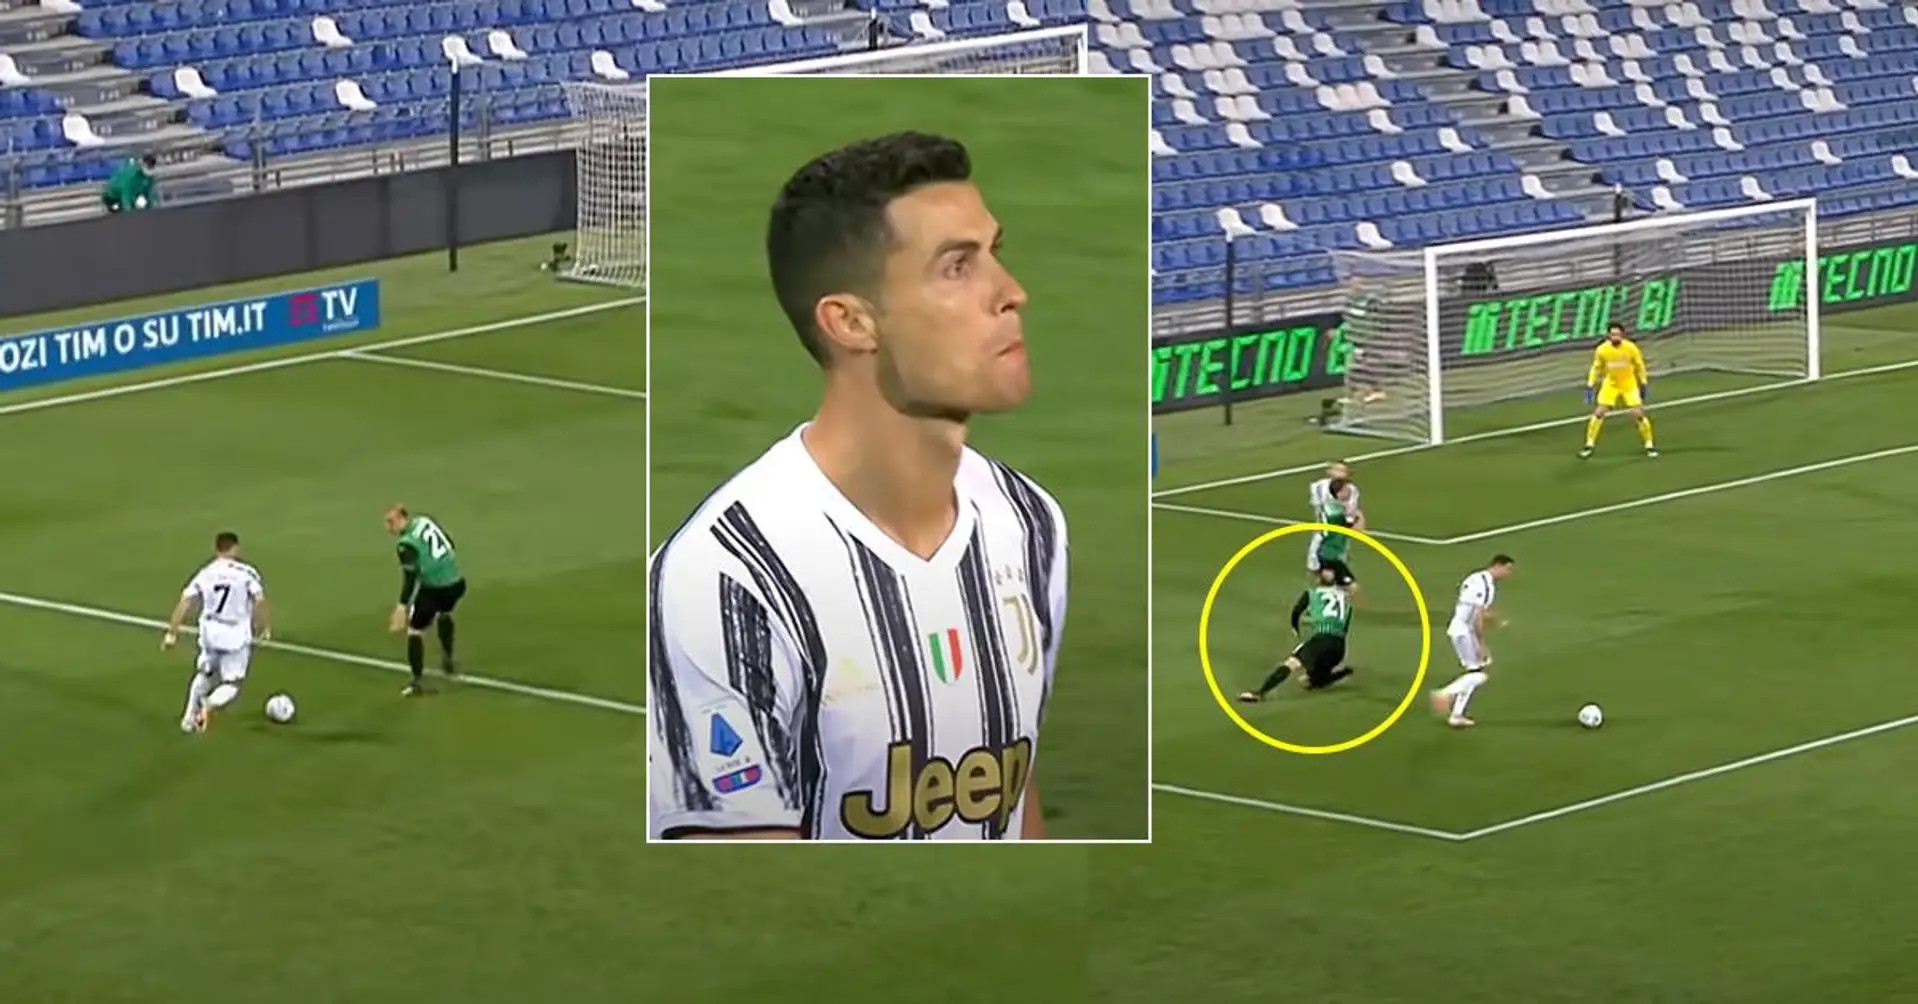 Cristiano Ronaldo verblüfft Serie-A-Verteidiger mit unglaublichem Trick und lässt ihn am Boden liegen